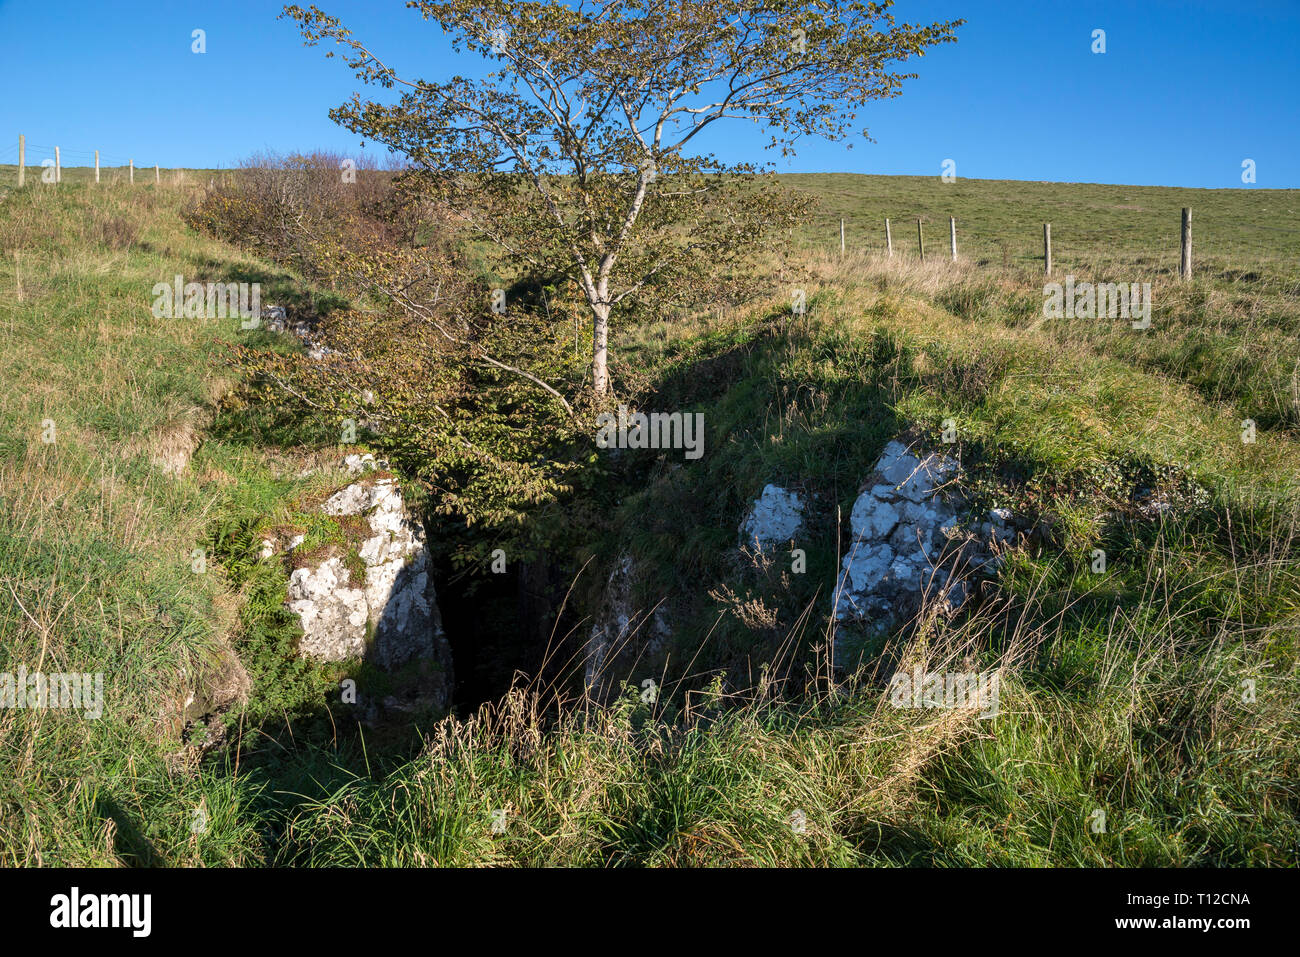 Eldon trou, un gouffre profond dans le paysage calcaire près de la forêt de pointe dans le Peak District, Derbyshire, Angleterre. Banque D'Images